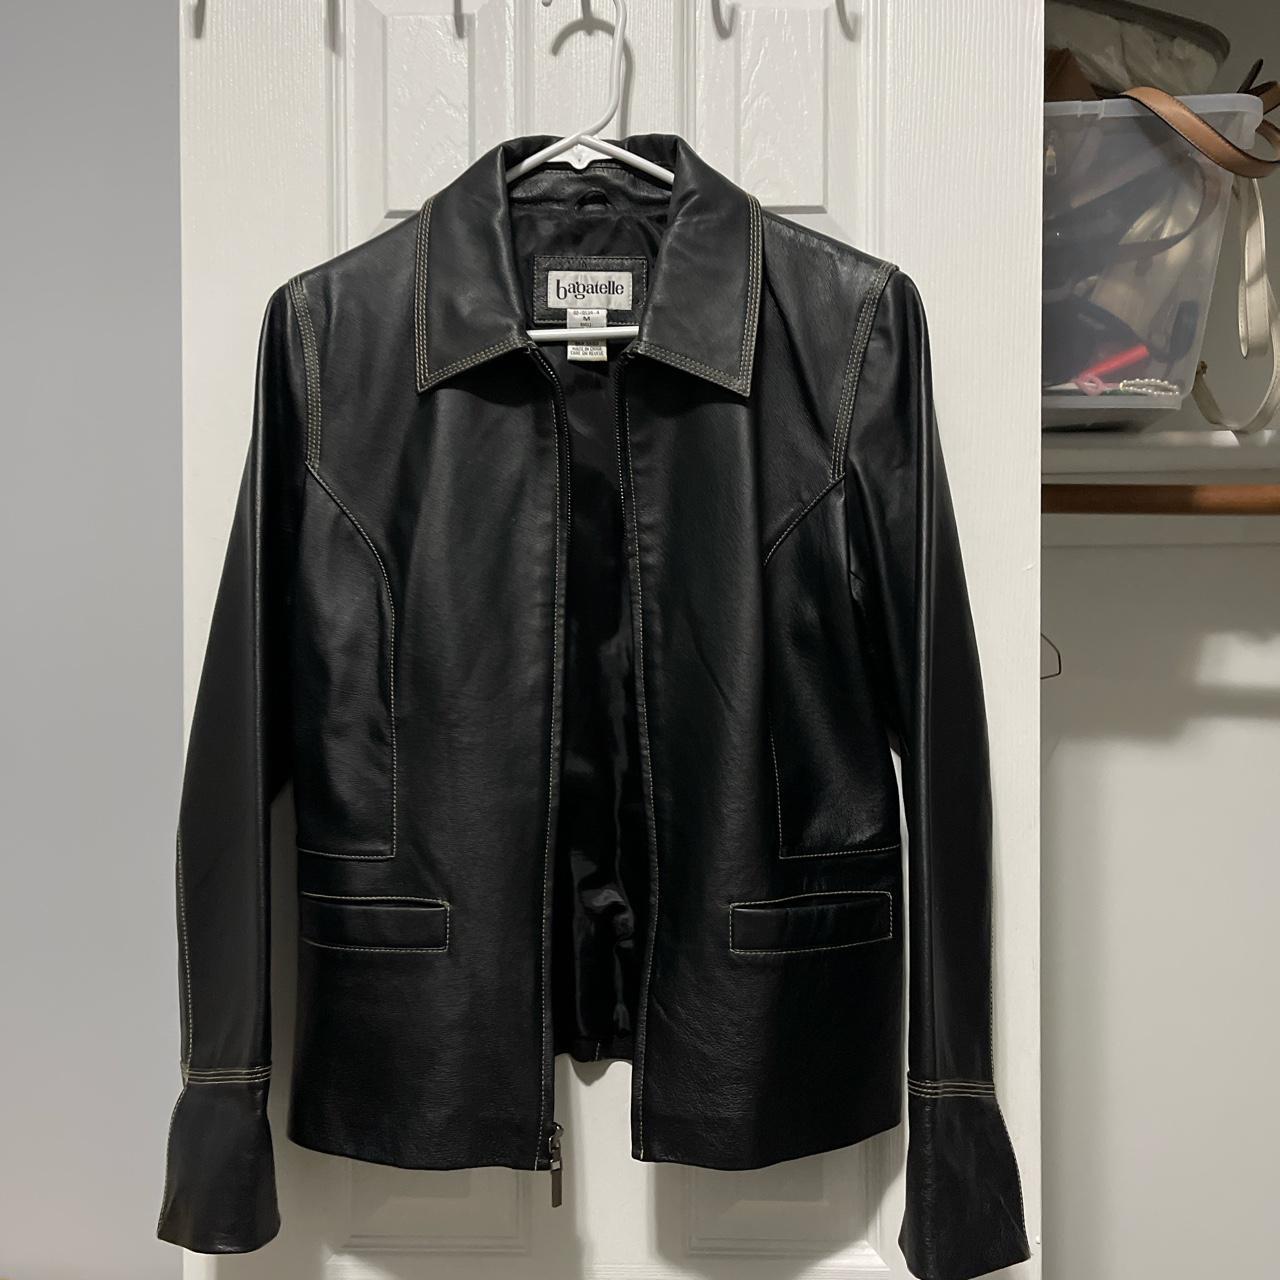 Zip up leather jacket - Depop